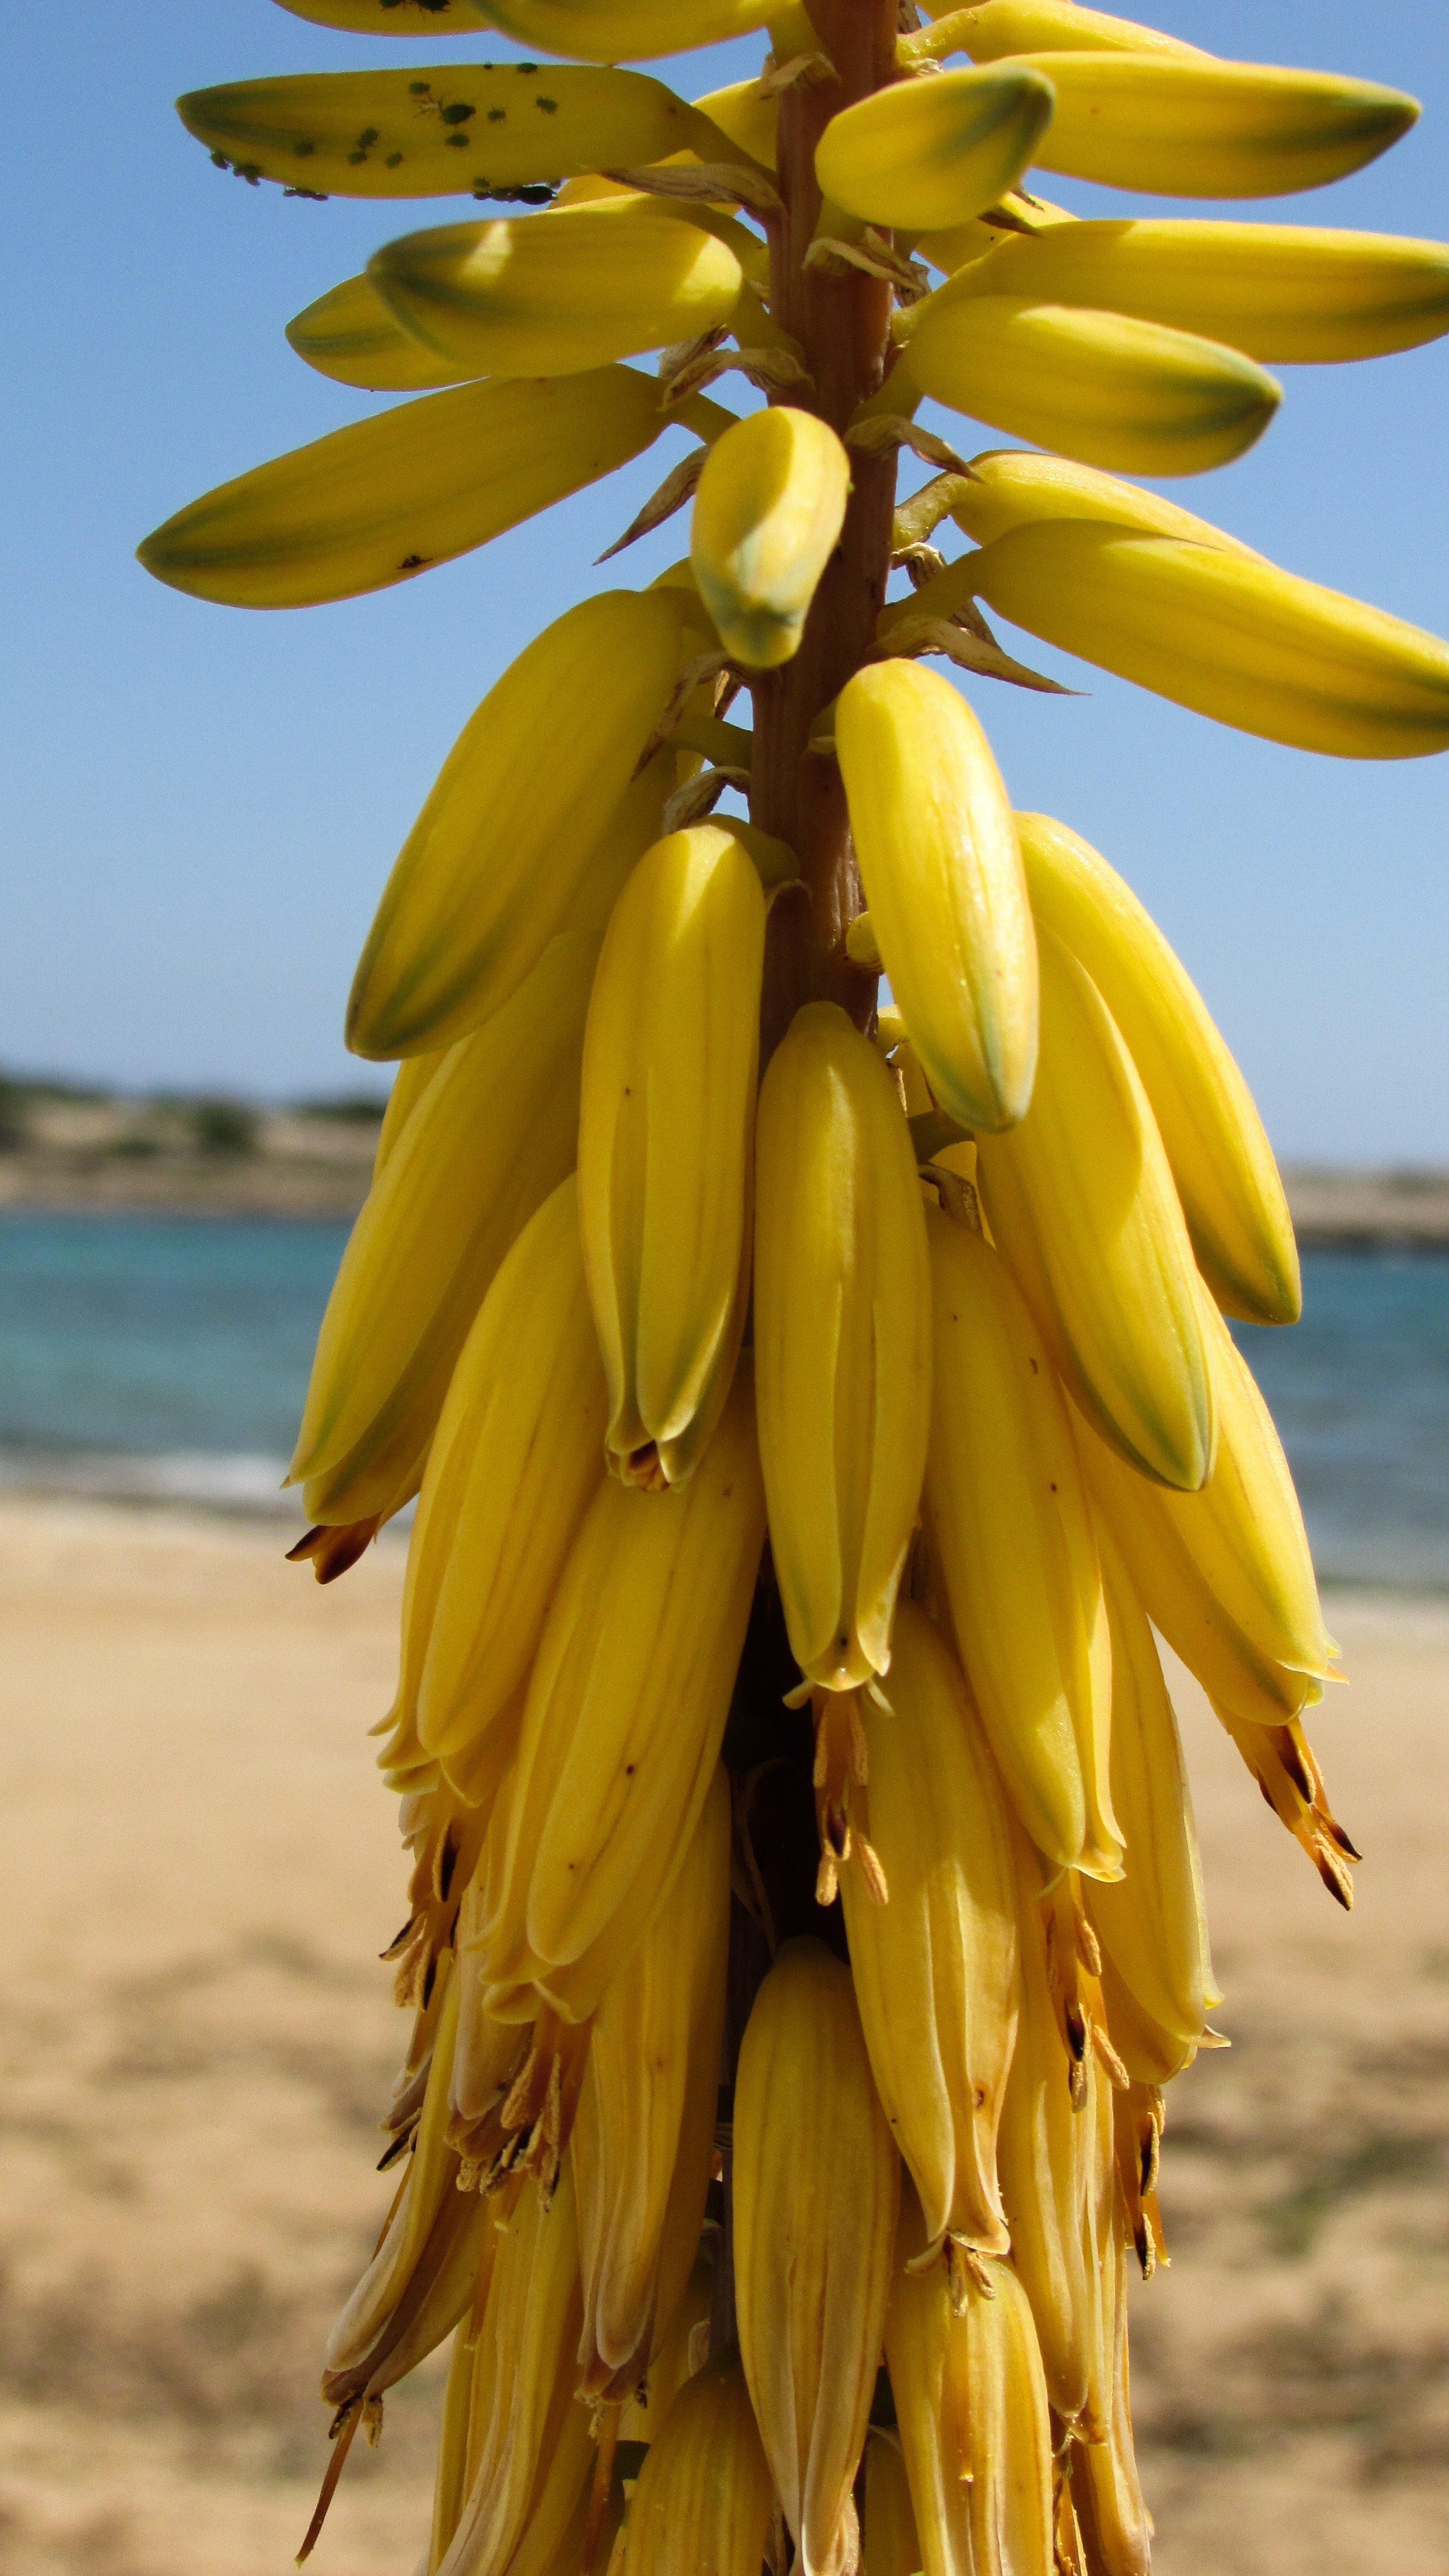 yellow banana and corn fruits